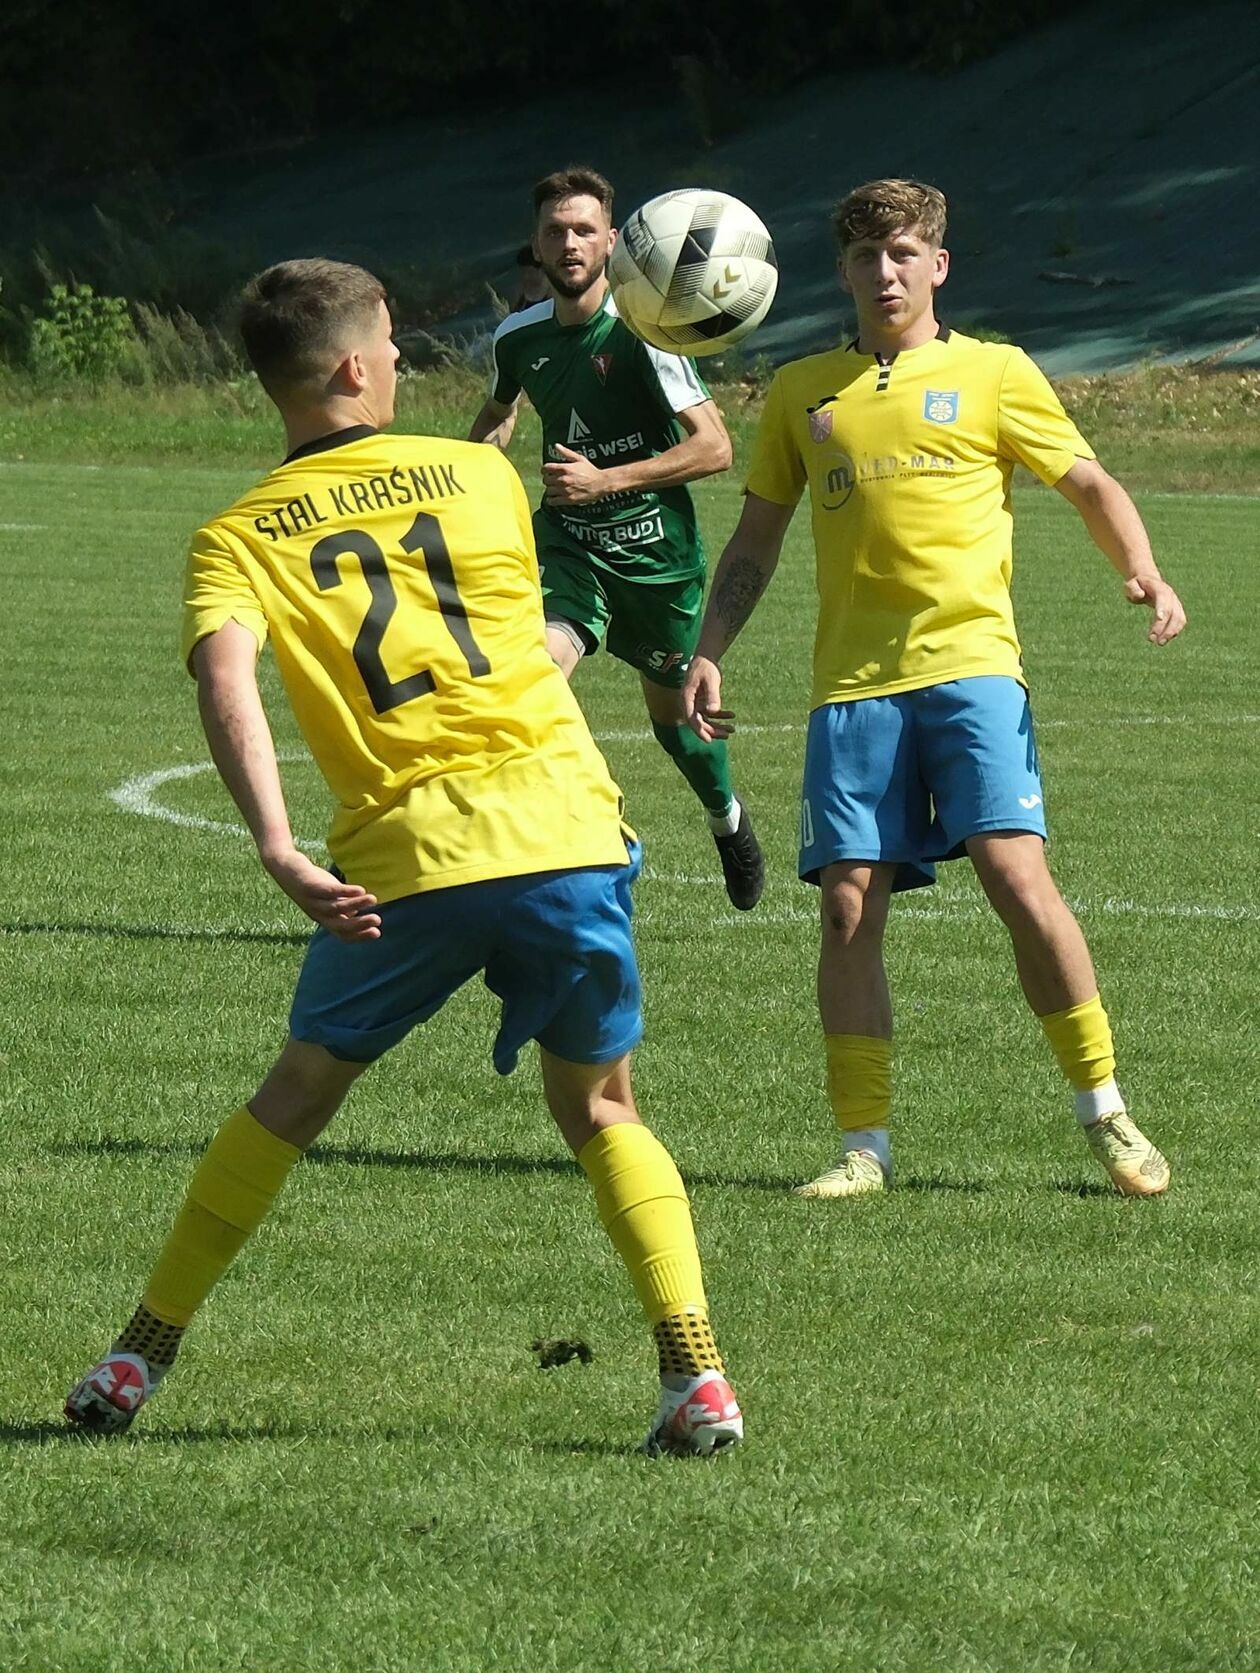  Lublinianka vs Stal Kraśnik 0:2 (zdjęcie 36) - Autor: DW